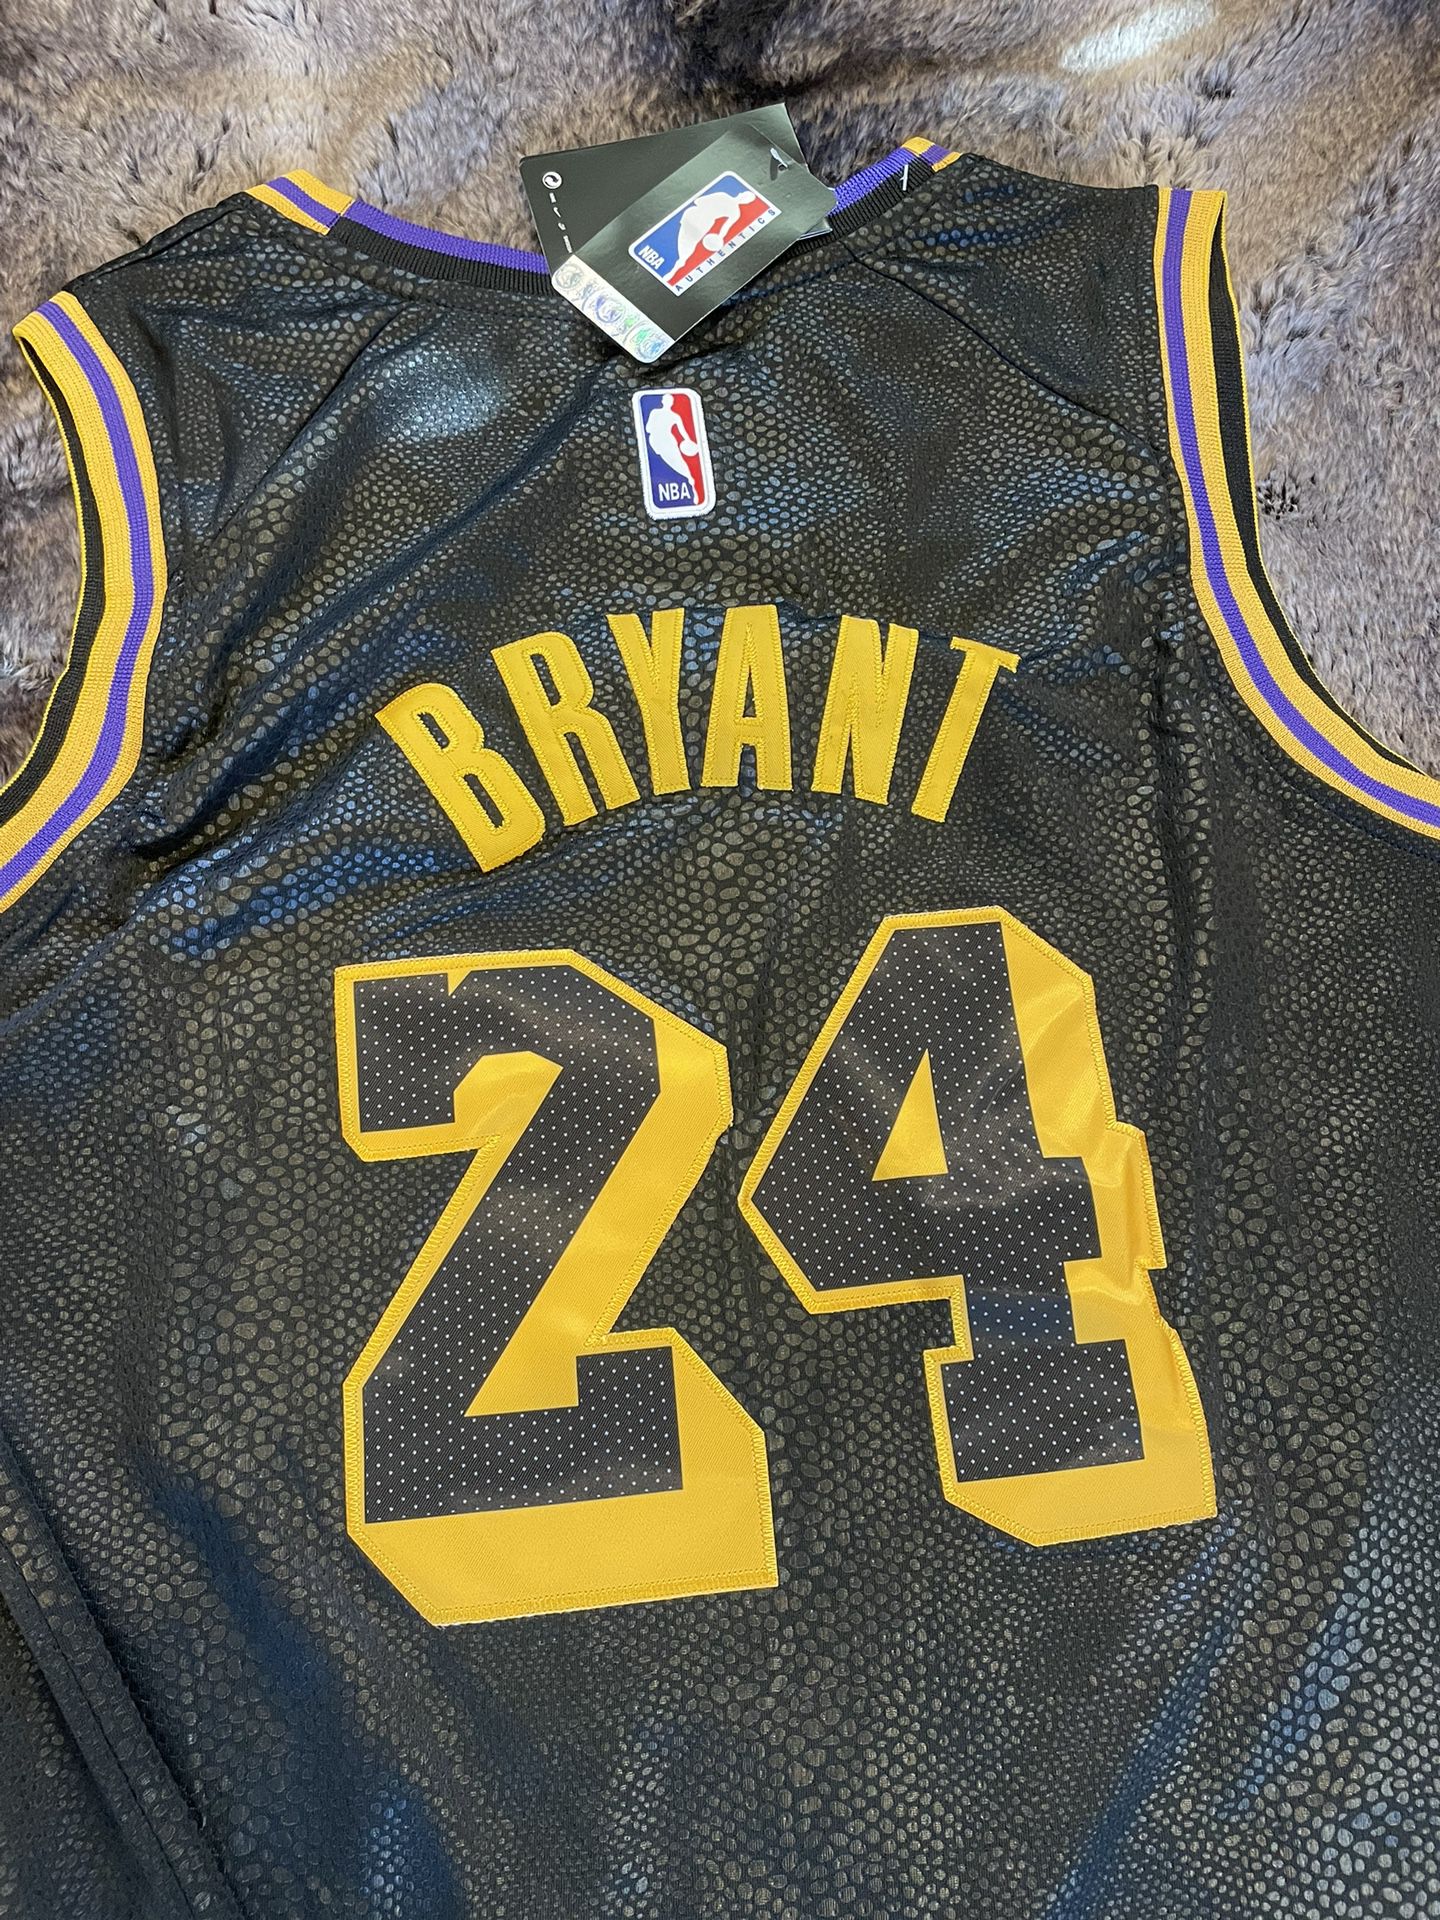 Kobe Bryant Jerseys for Sale in El Cajon, CA - OfferUp